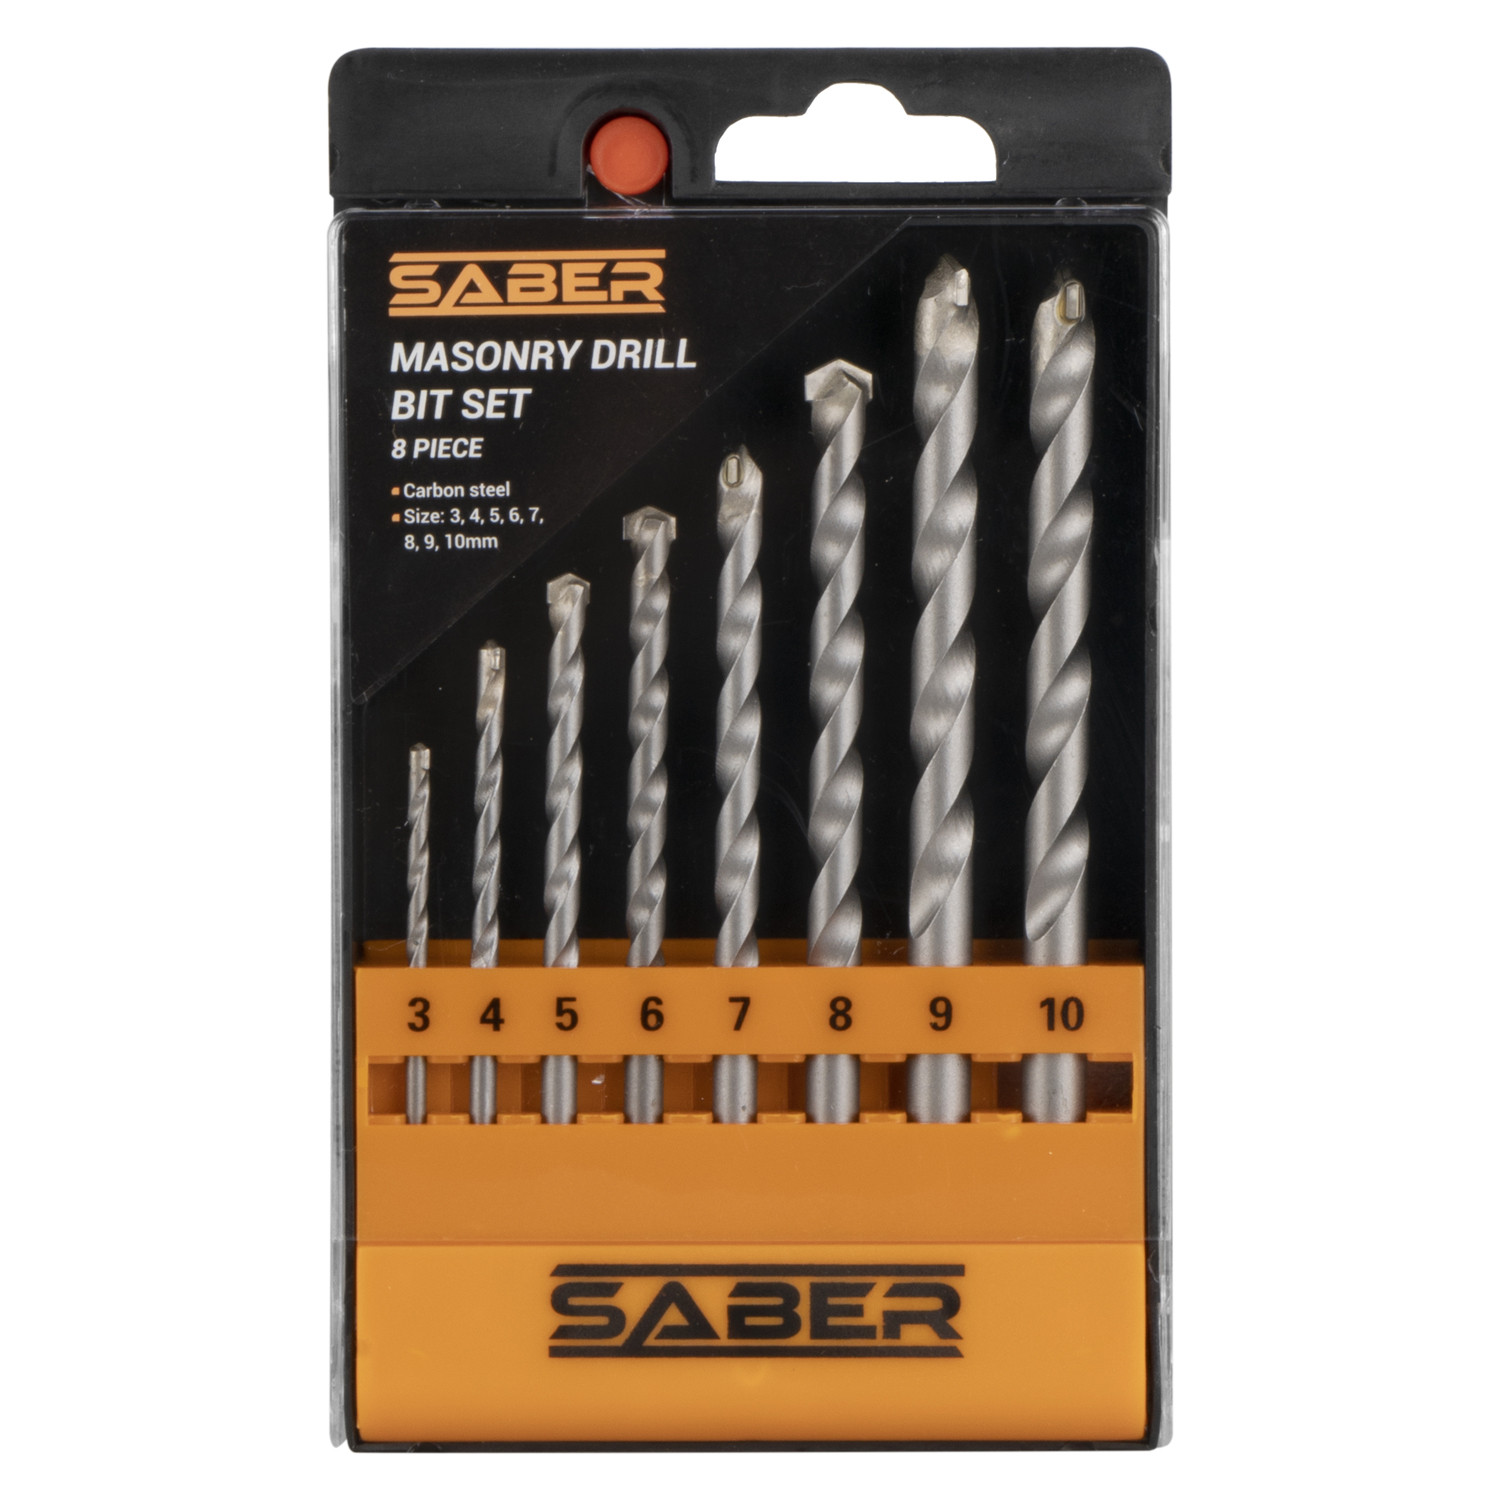 Saber 8 Piece Masonry Drill Bit Set Image